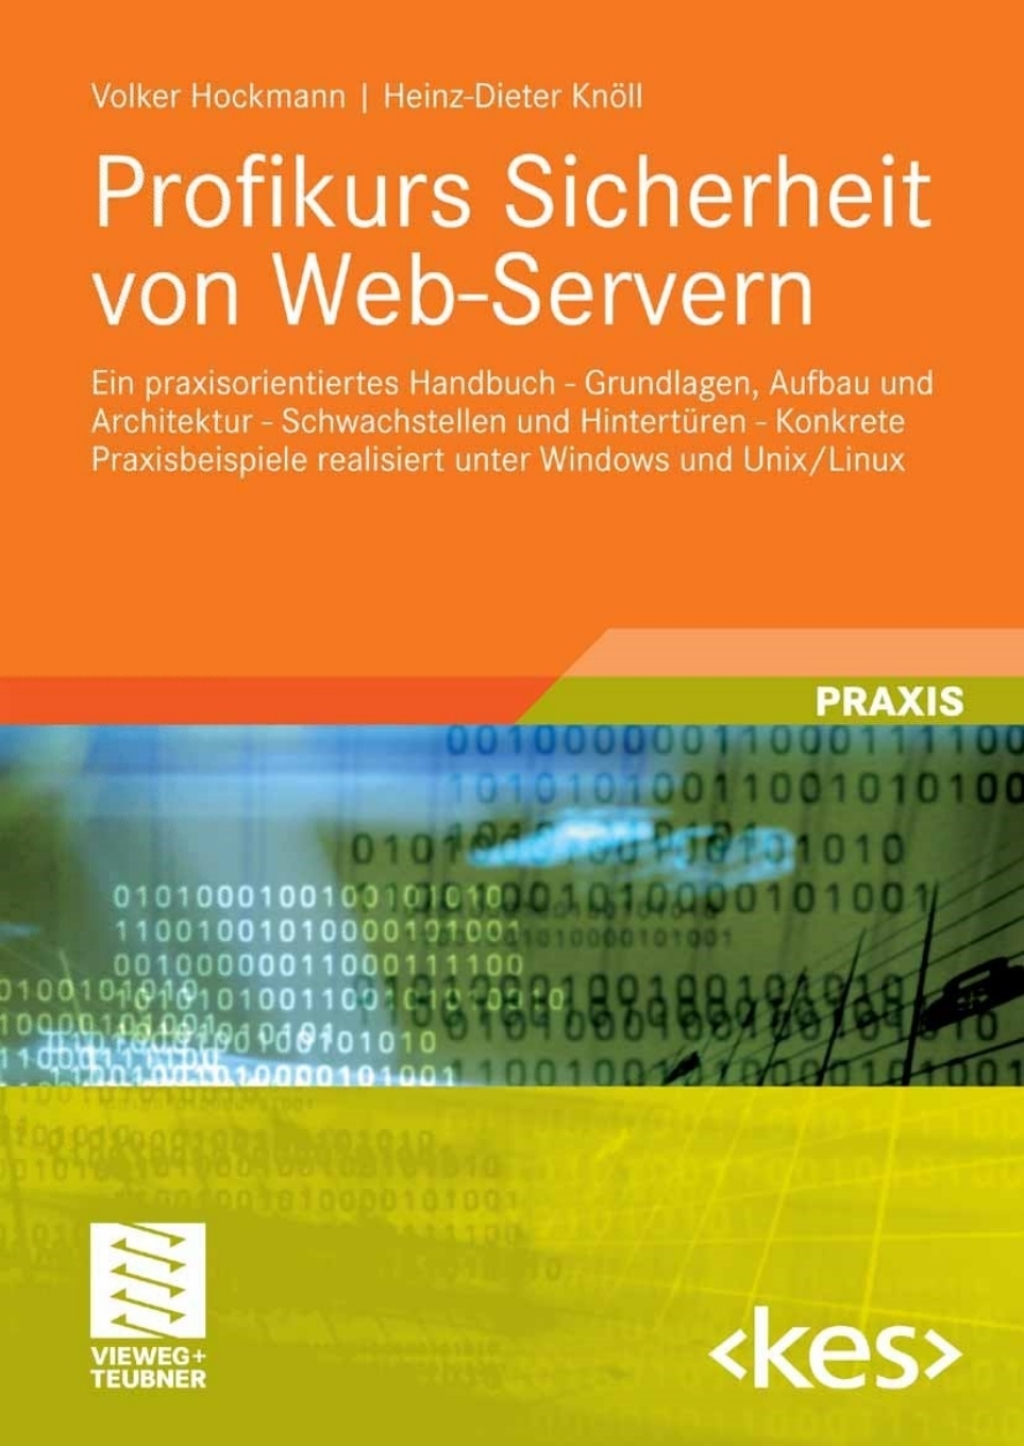 ISBN 9783834800220 product image for Profikurs Sicherheit von Web-Servern (eBook Rental) | upcitemdb.com